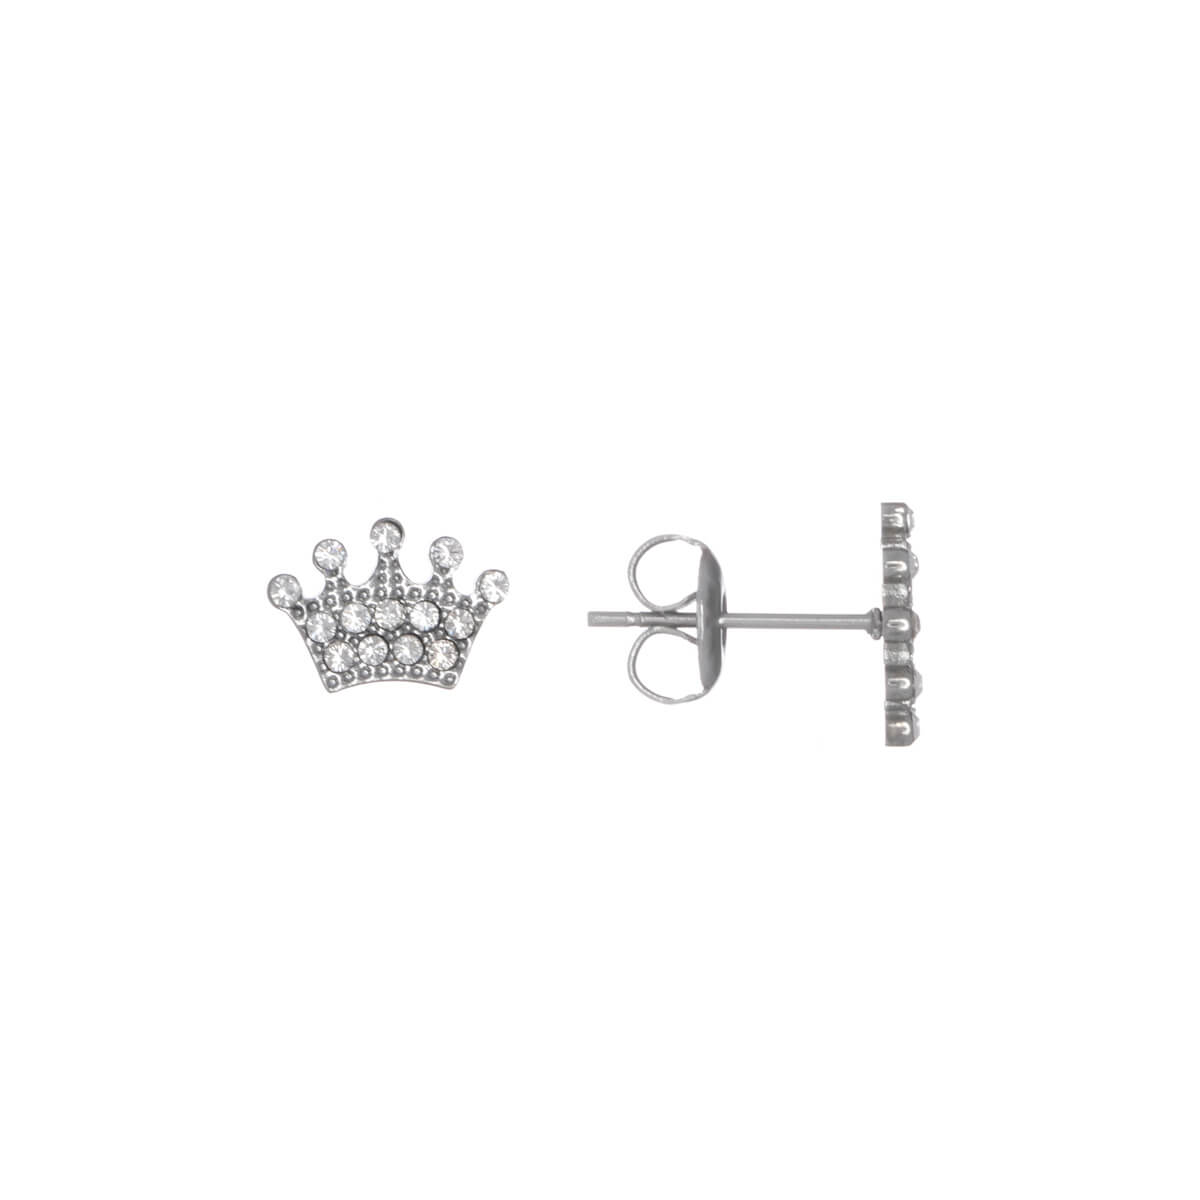 Artificial diamond crown earrings (steel 316L)